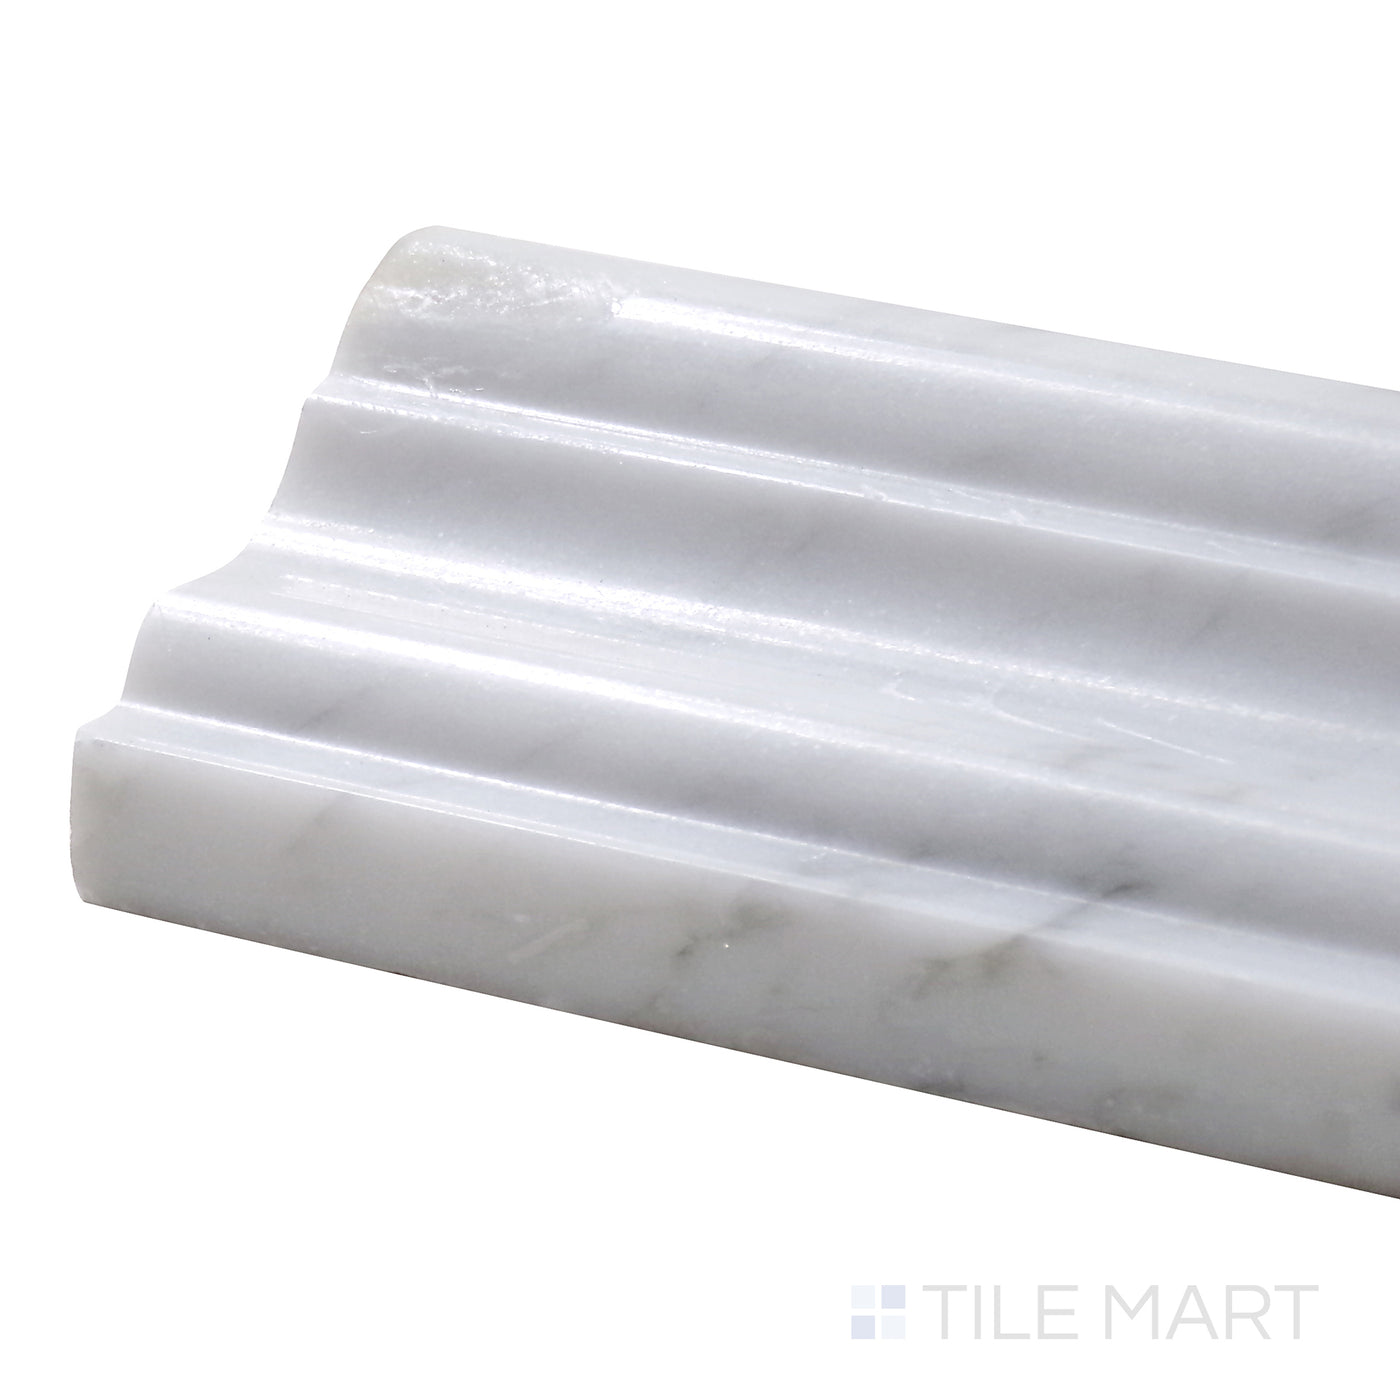 Sto-Re Chairrail Marble Trim 2.5X12 Carrara Polished